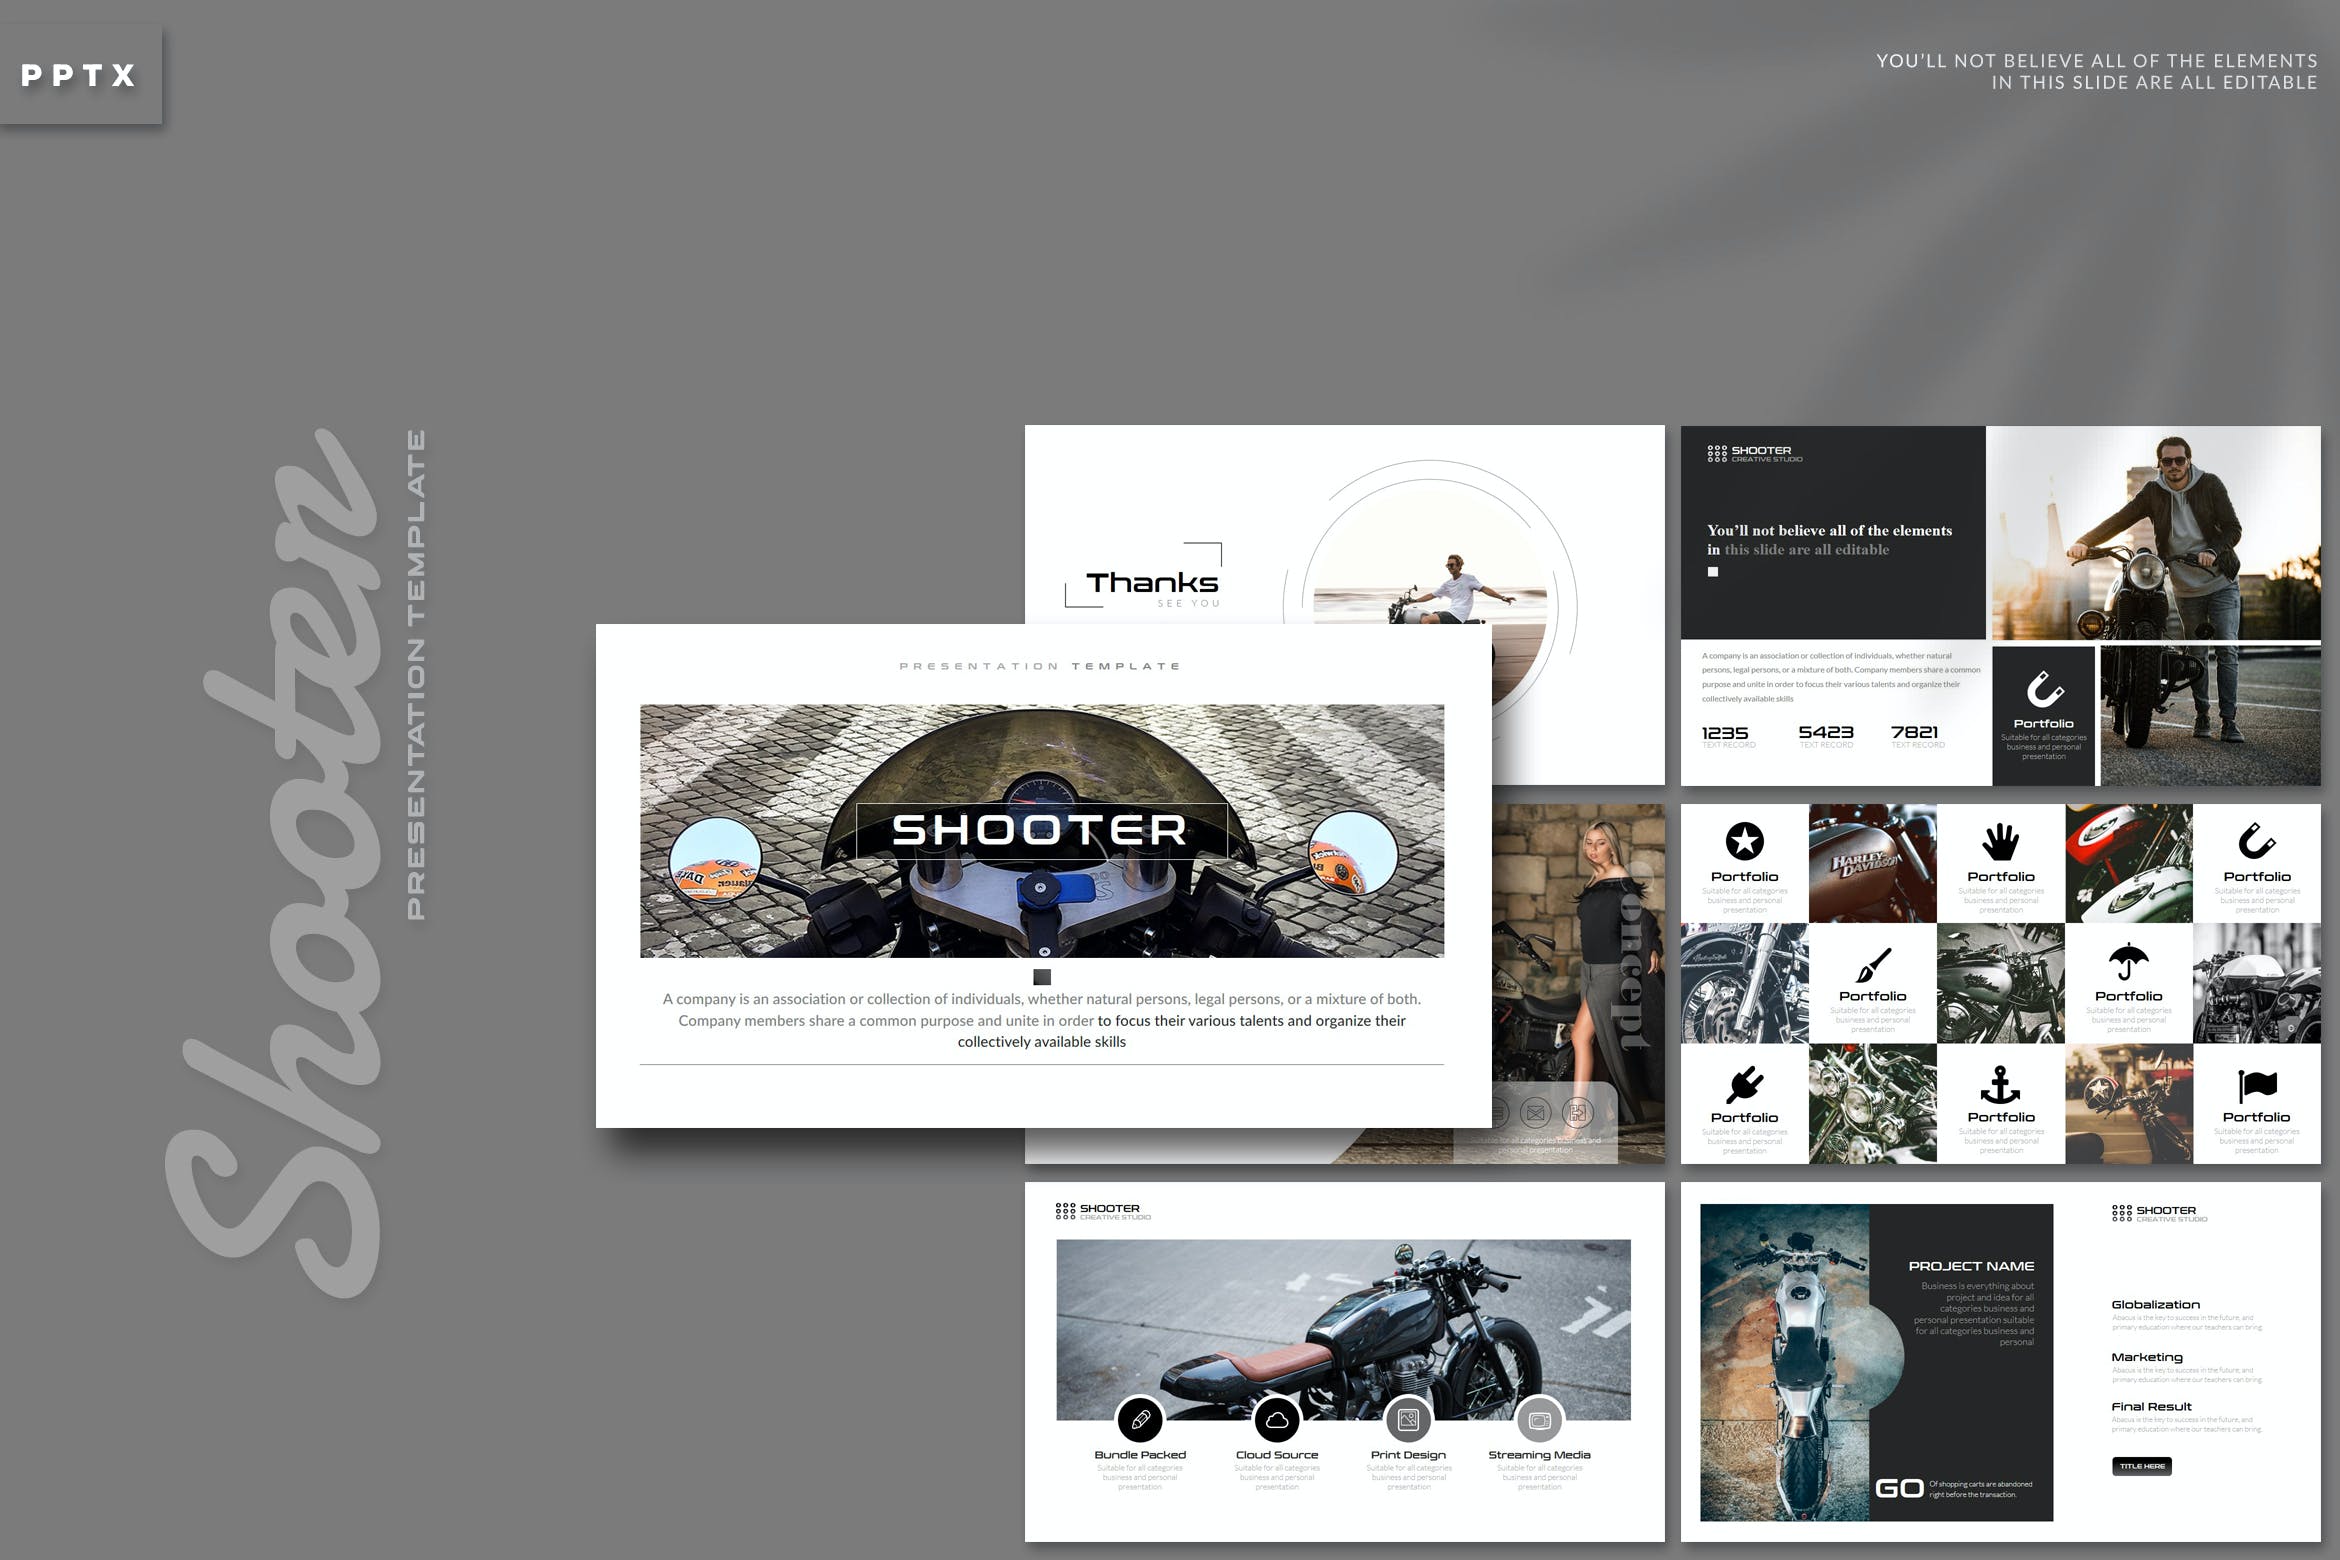 创意现代摩托车主题Powerpoint幻灯片模板 Shooter – Powerpoint Template设计素材模板